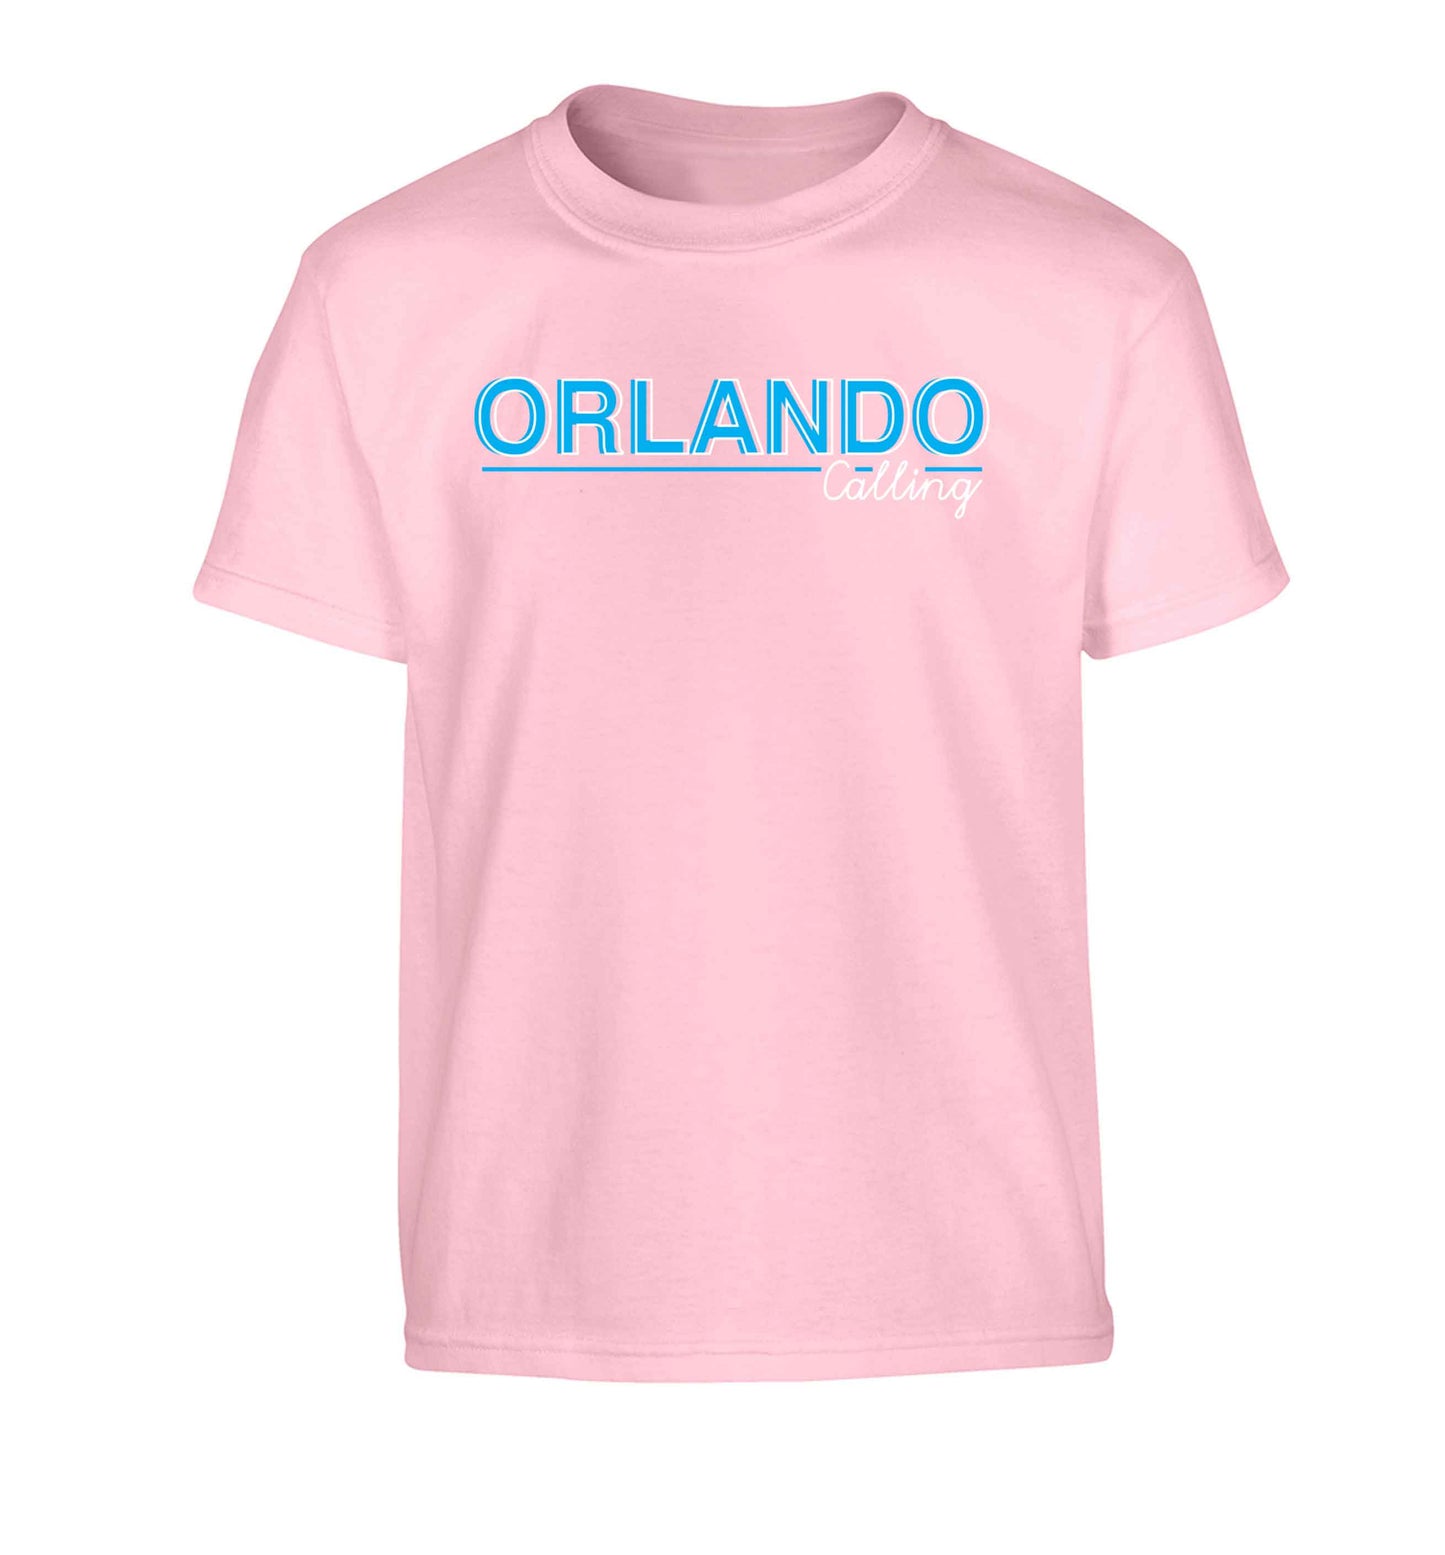 Orlando calling Children's light pink Tshirt 12-13 Years